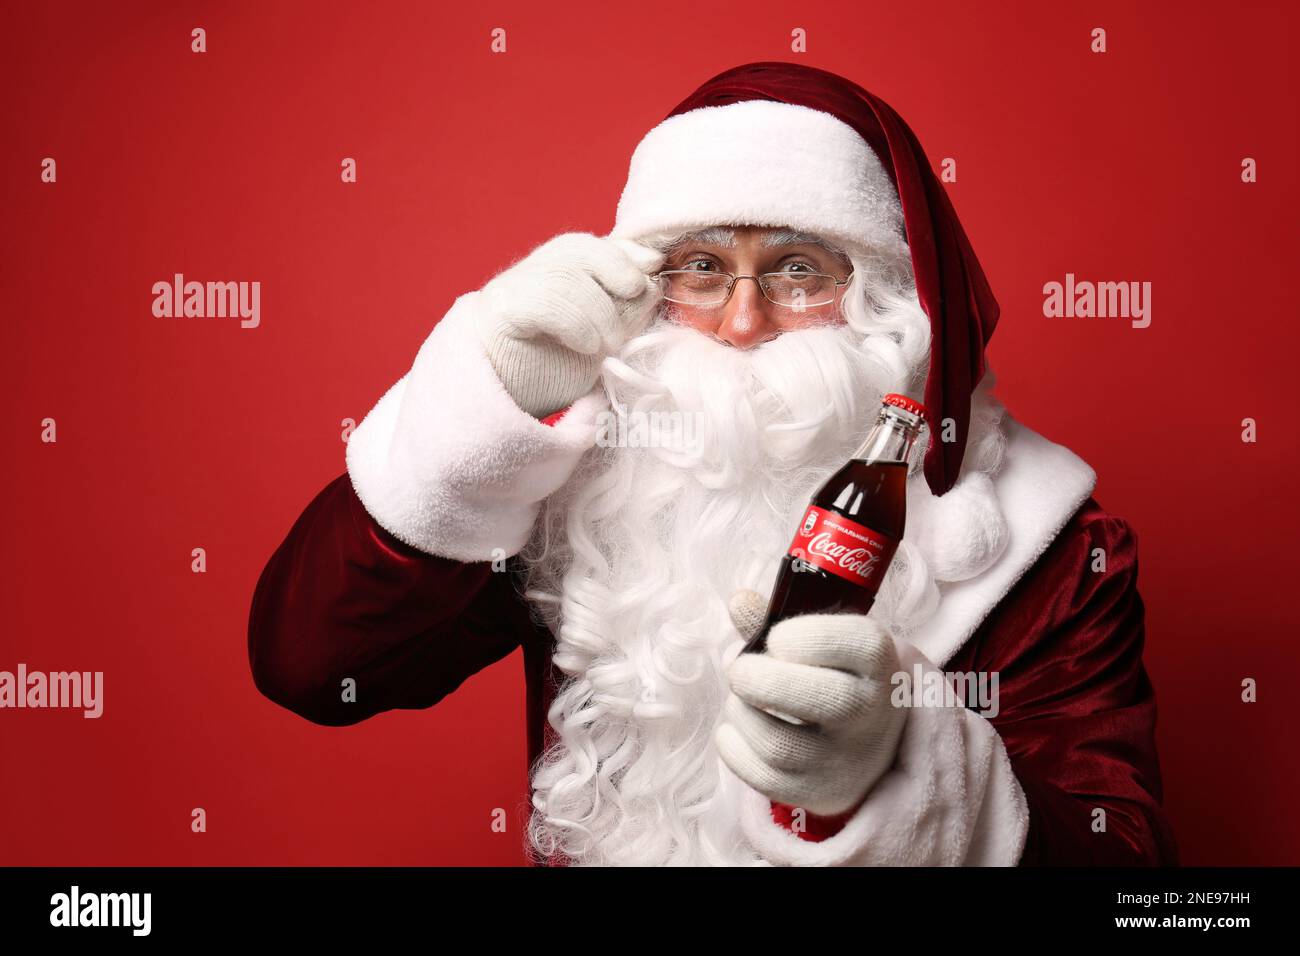 MYKOLAIV, UKRAINE - 18. JANUAR 2021: Santa Claus hält Coca-Cola-Flasche auf rotem Hintergrund Stockfoto